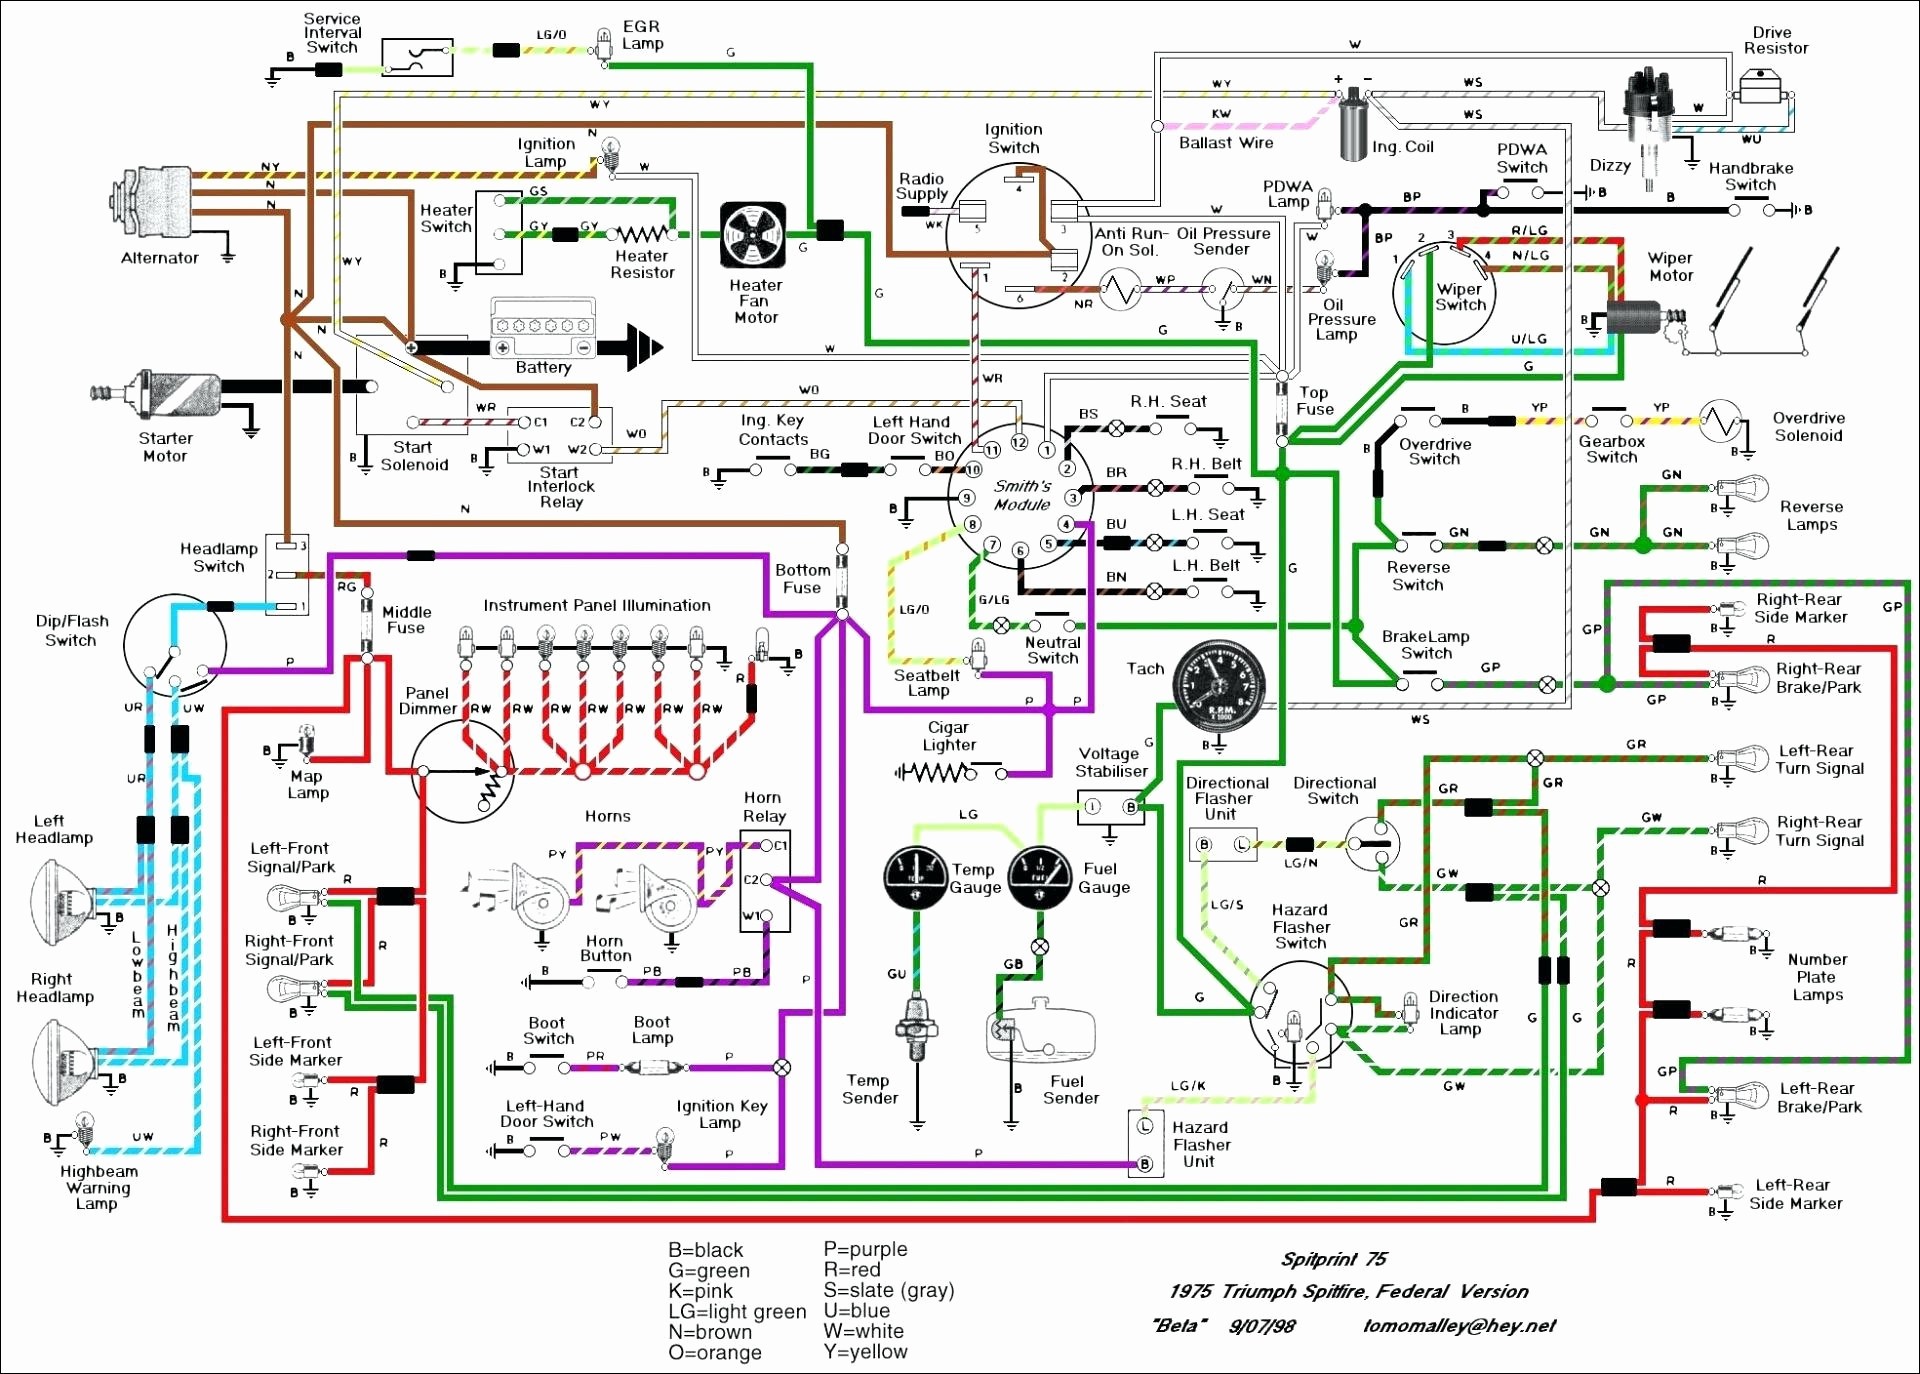 1976 mgb wiring diagram od wire data schema u2022 rh lemise co MGB Vacuum Diagram MGB